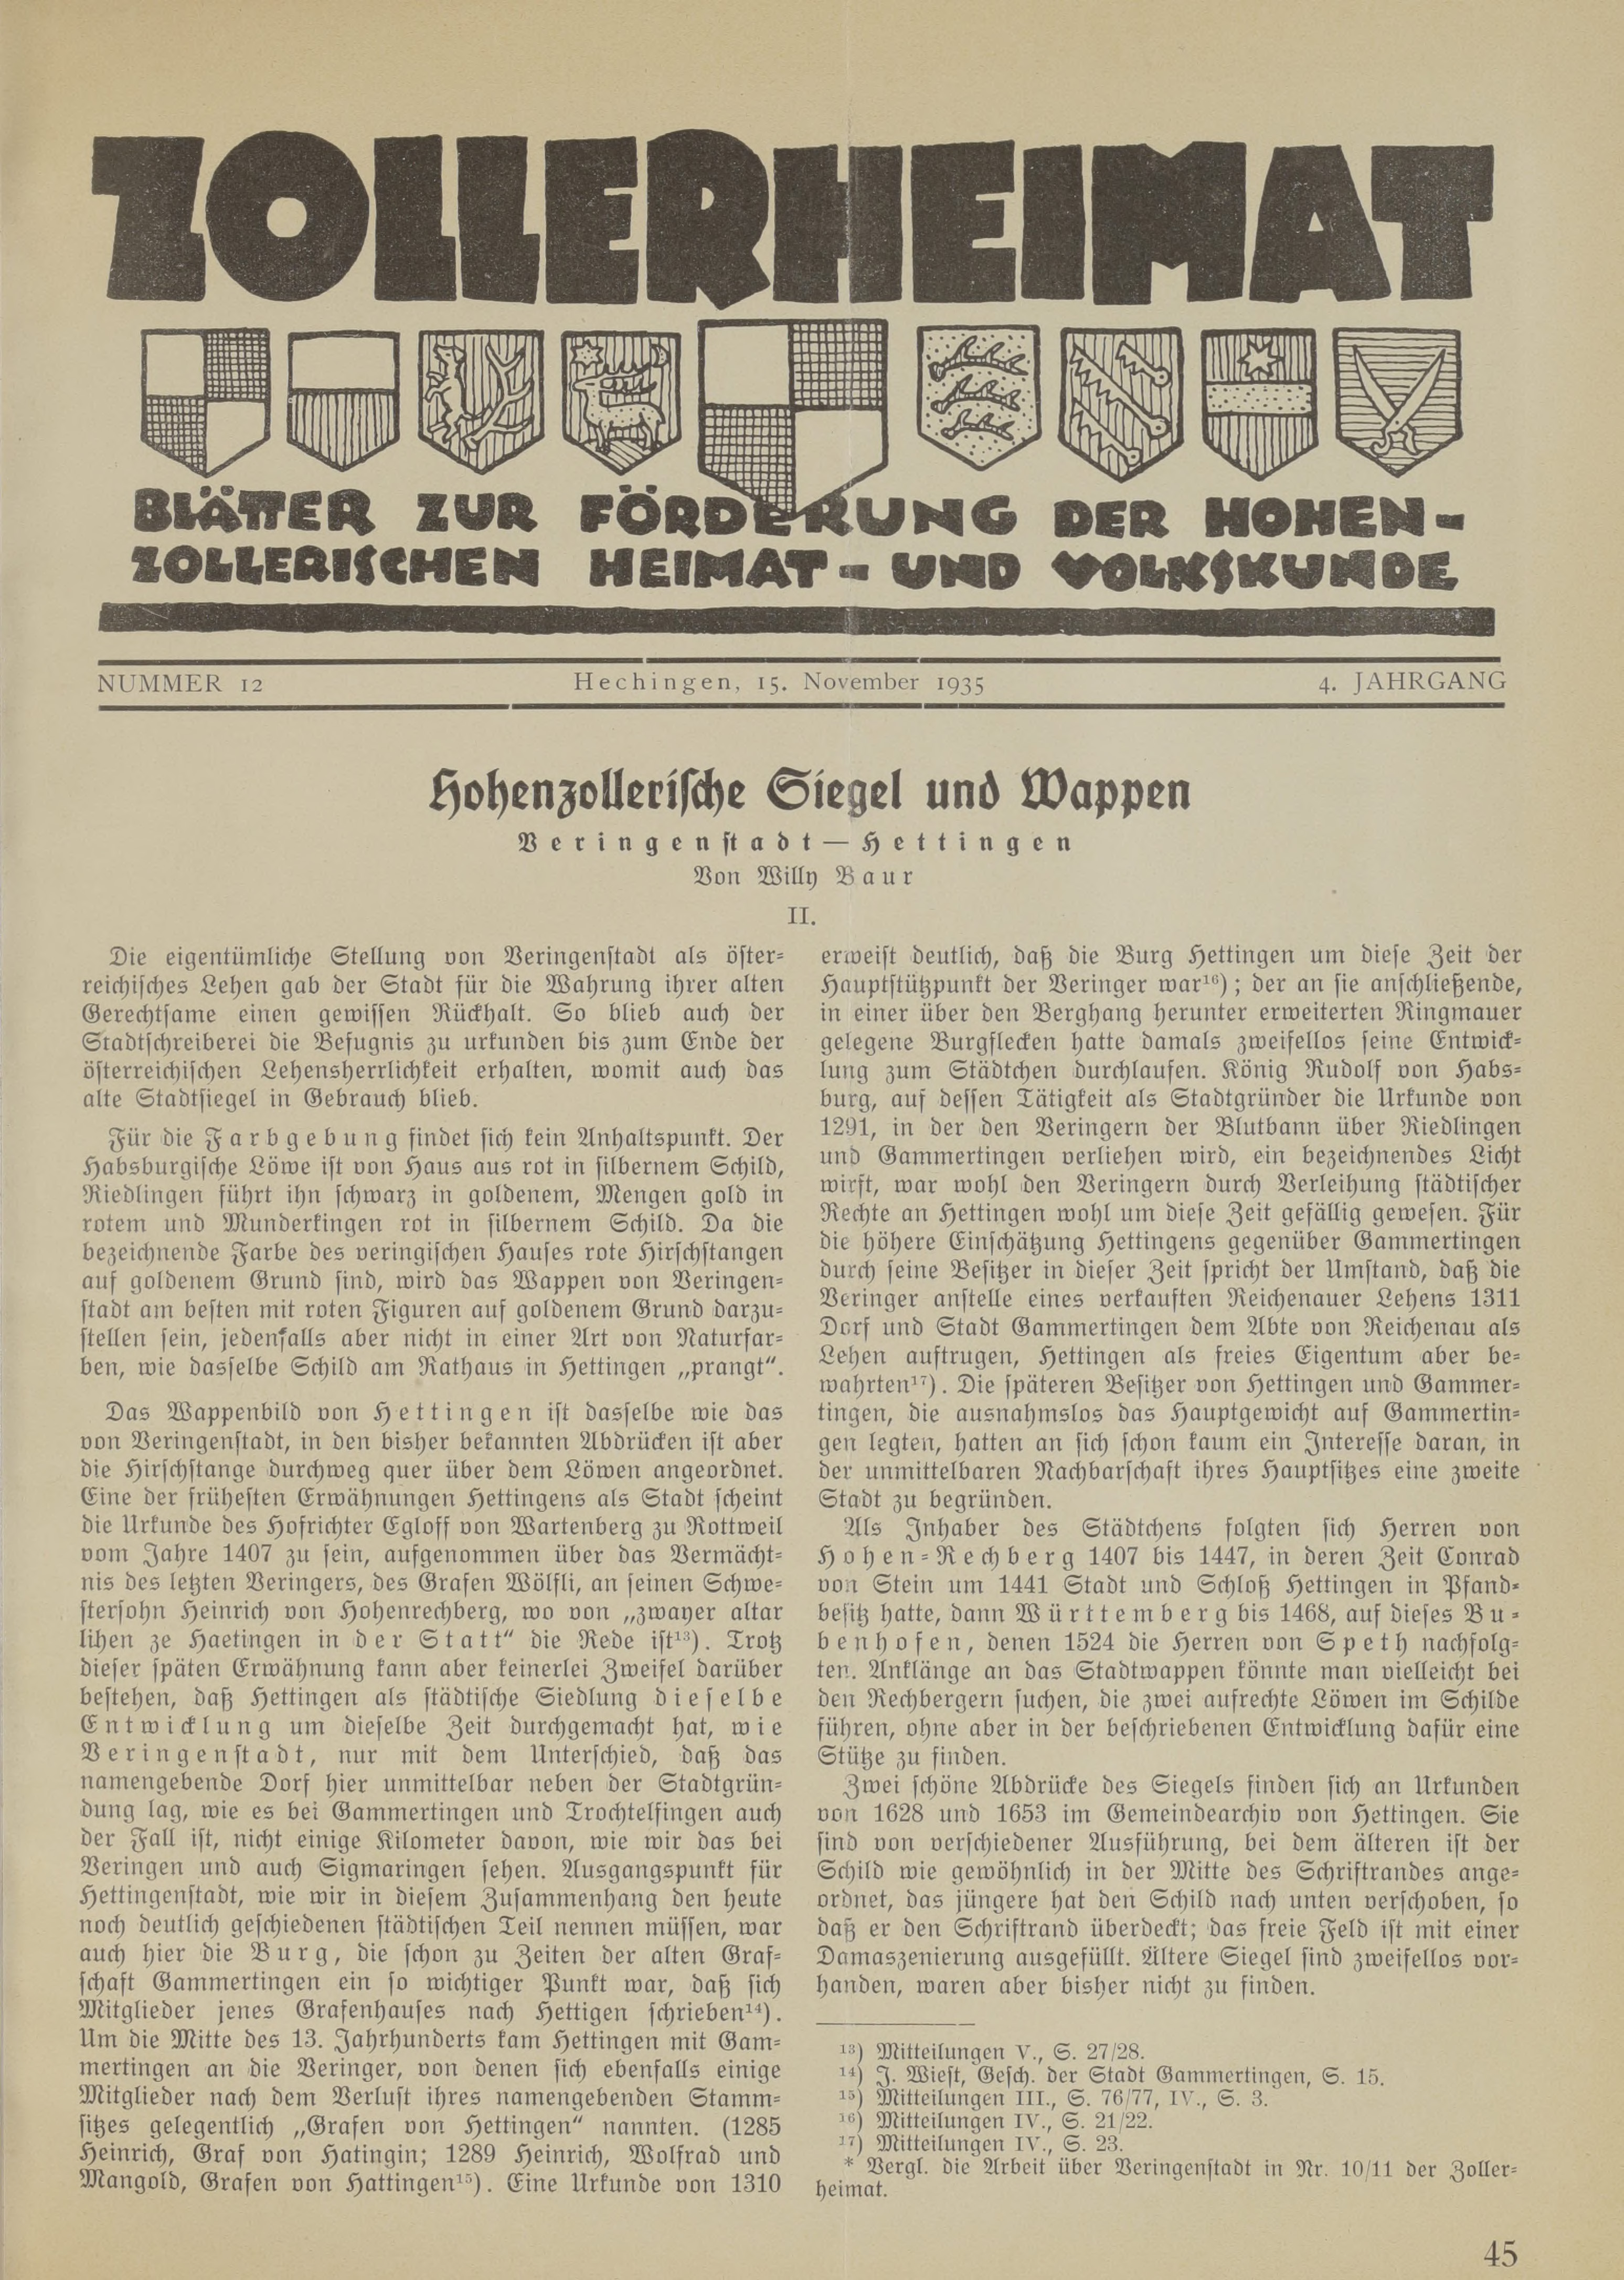                     Ansehen Bd. 4 Nr. 12 (1935): Zollerheimat
                